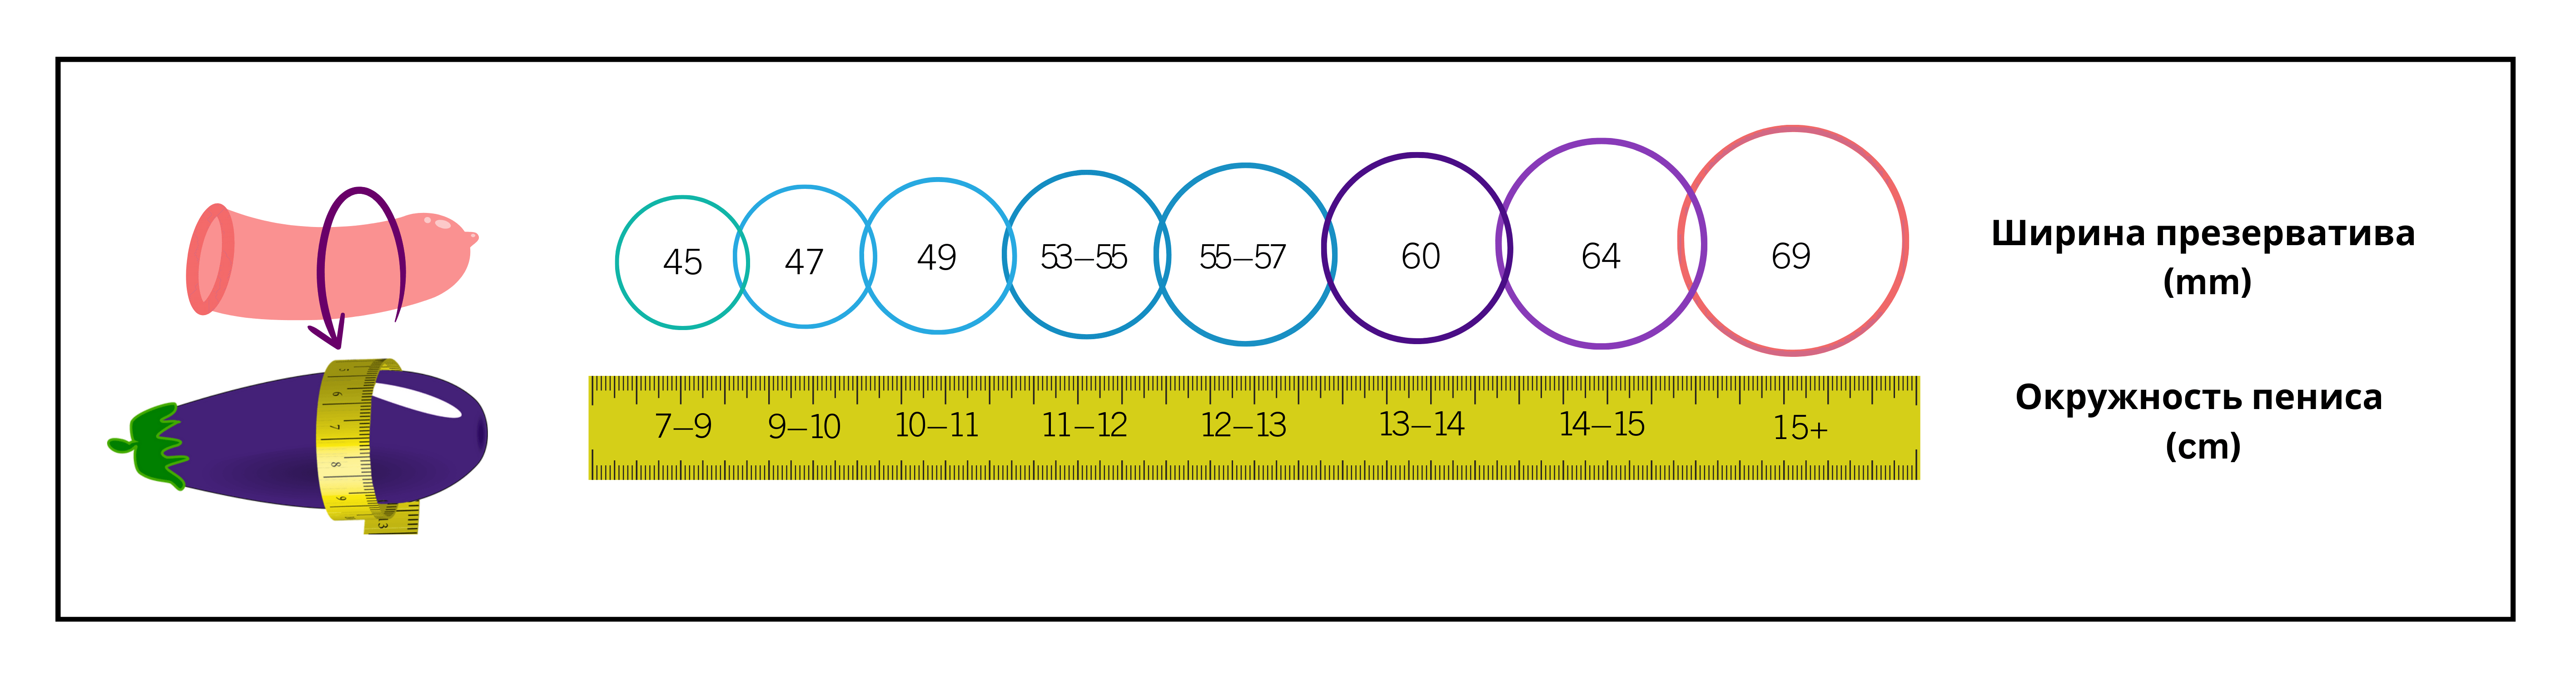 Инфографика, отображающая различные размеры презервативов и соответствующие измерения